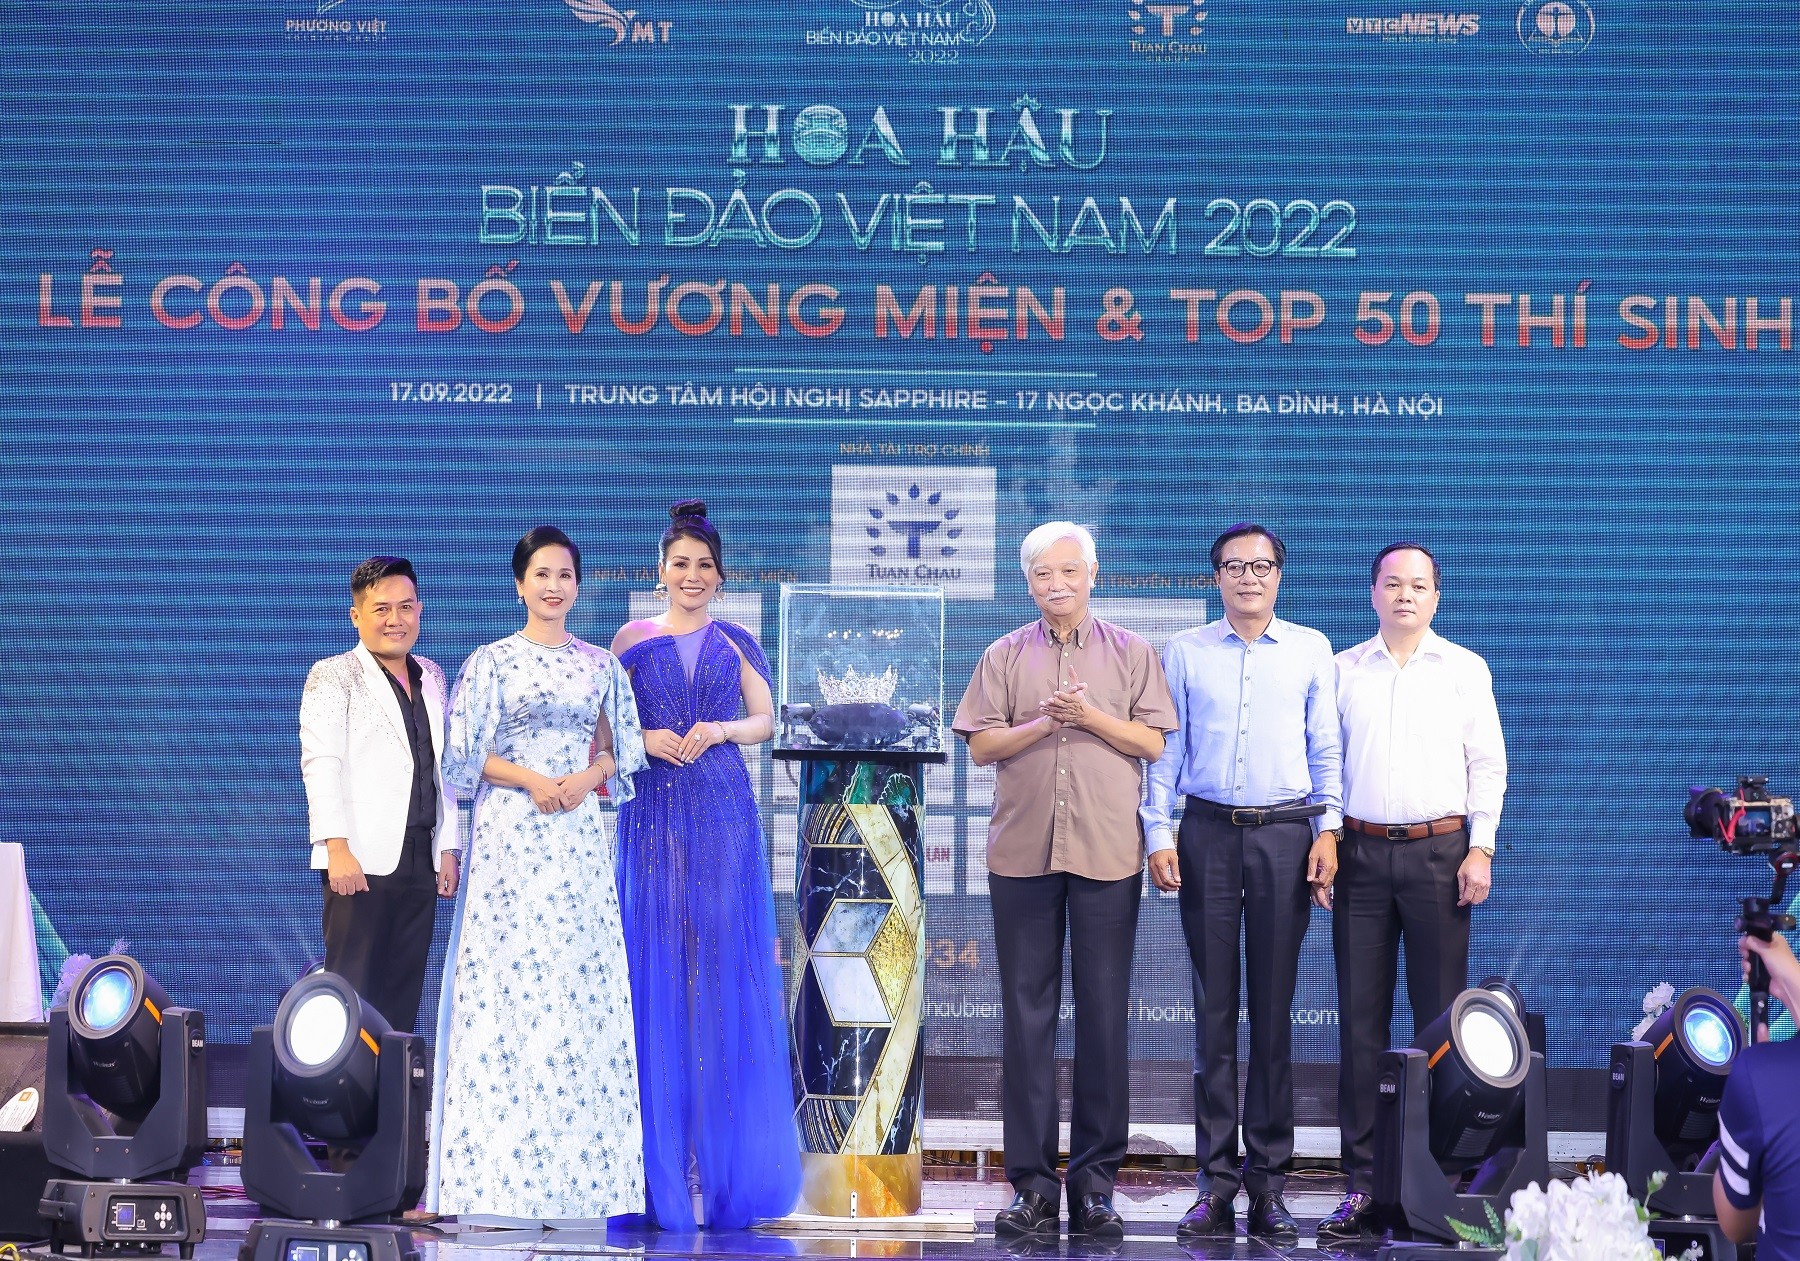 Chặng đường tìm kiếm chủ nhân vương miện Hoa hậu Biển đảo Việt Nam 2022